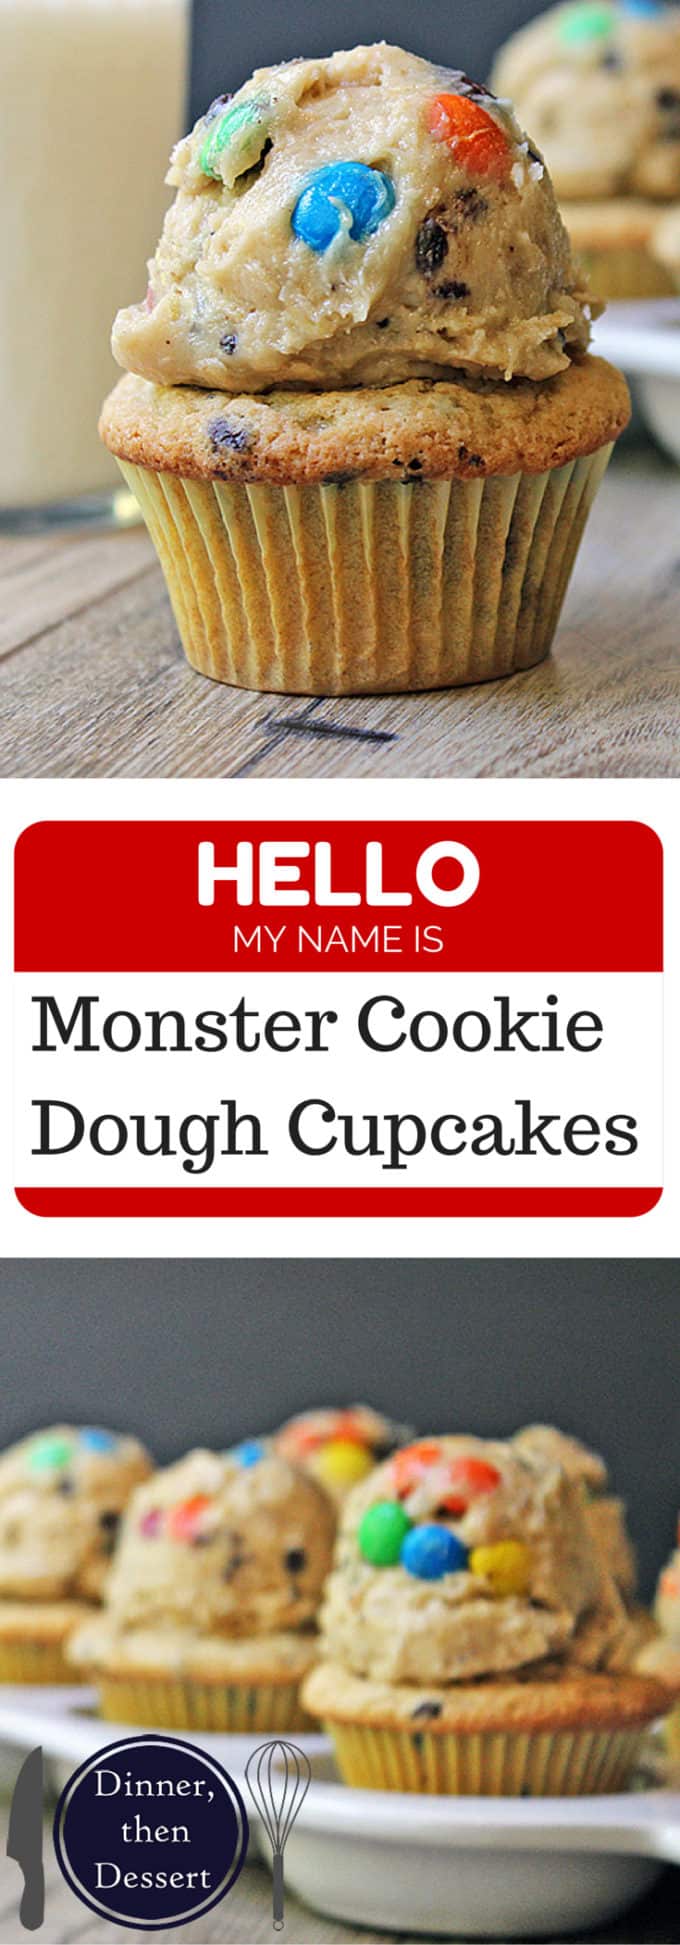 Monster Cookie Dough Cupcakes - Dinner, then Dessert